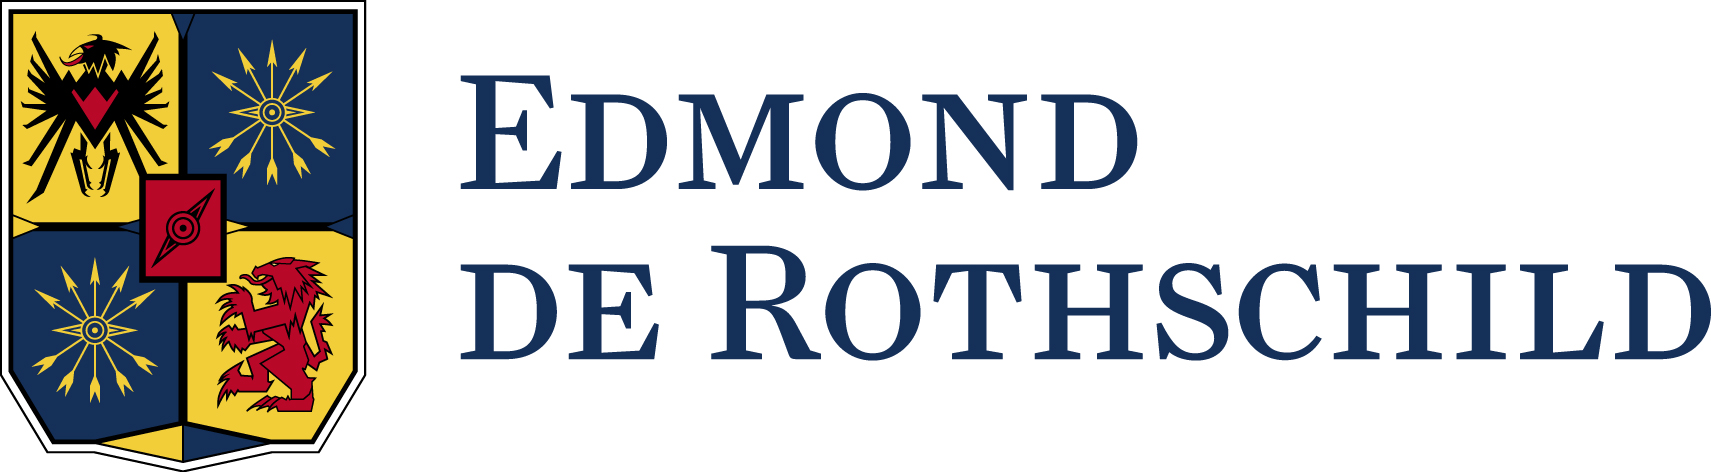 logo rothschild